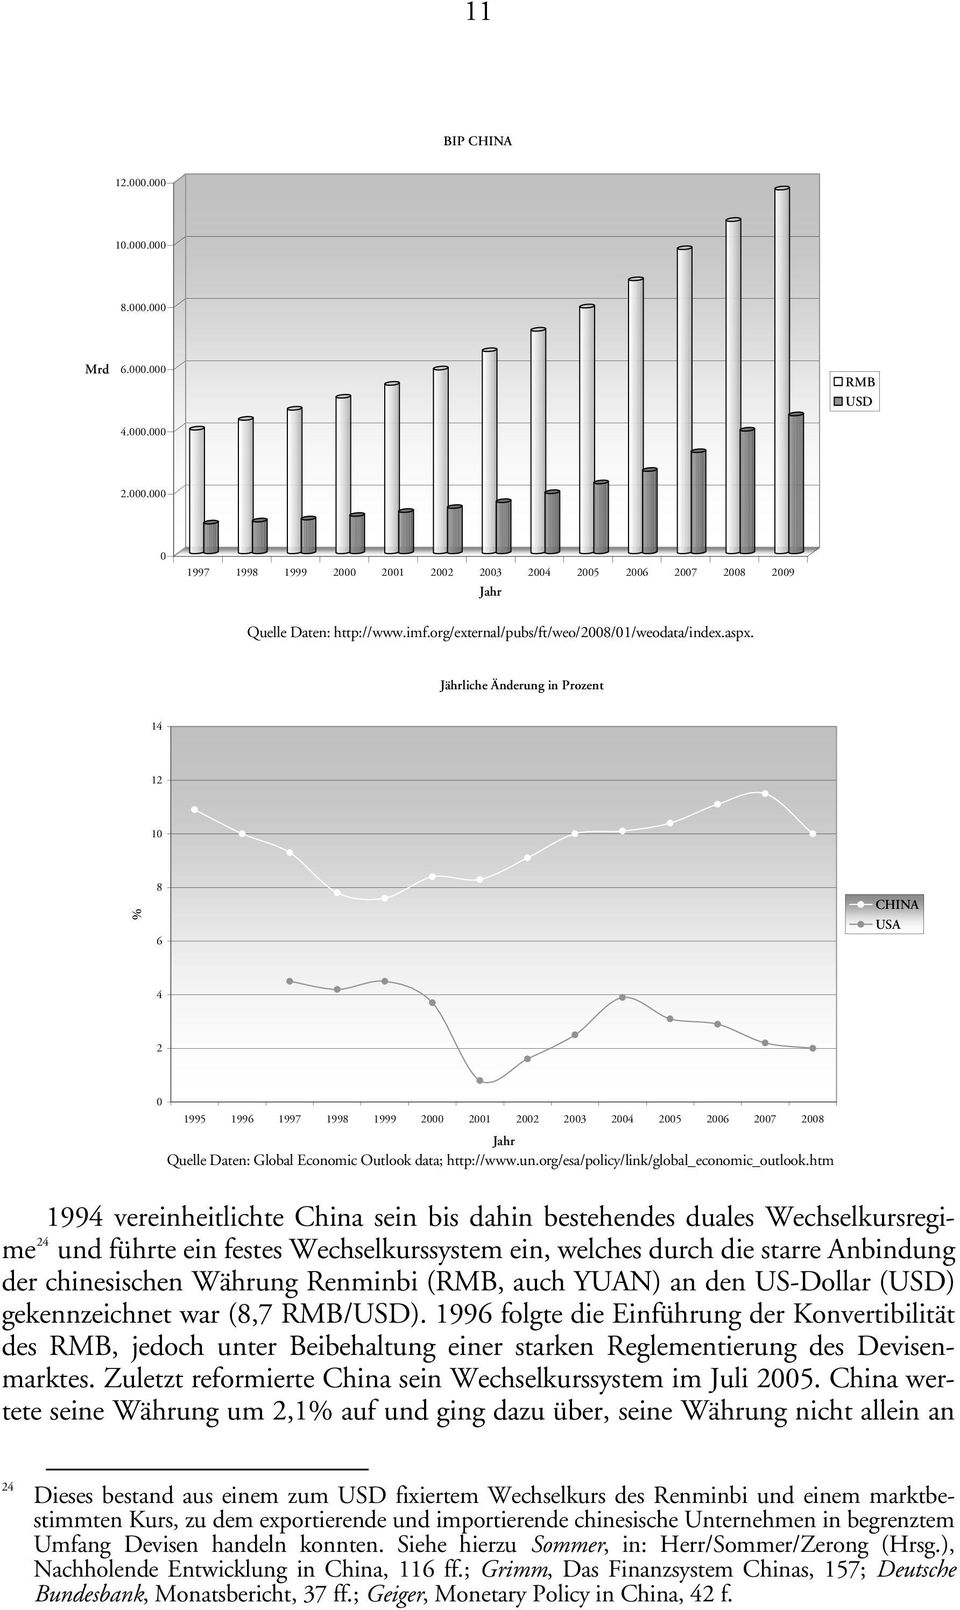 Jährliche Änderung in Prozent 14 12 10 % 8 6 CHINA USA 4 2 0 1995 1996 1997 1998 1999 2000 2001 2002 2003 2004 2005 2006 2007 2008 Jahr Quelle Daten: Global Economic Outlook data; http://www.un.org/esa/policy/link/global_economic_outlook.